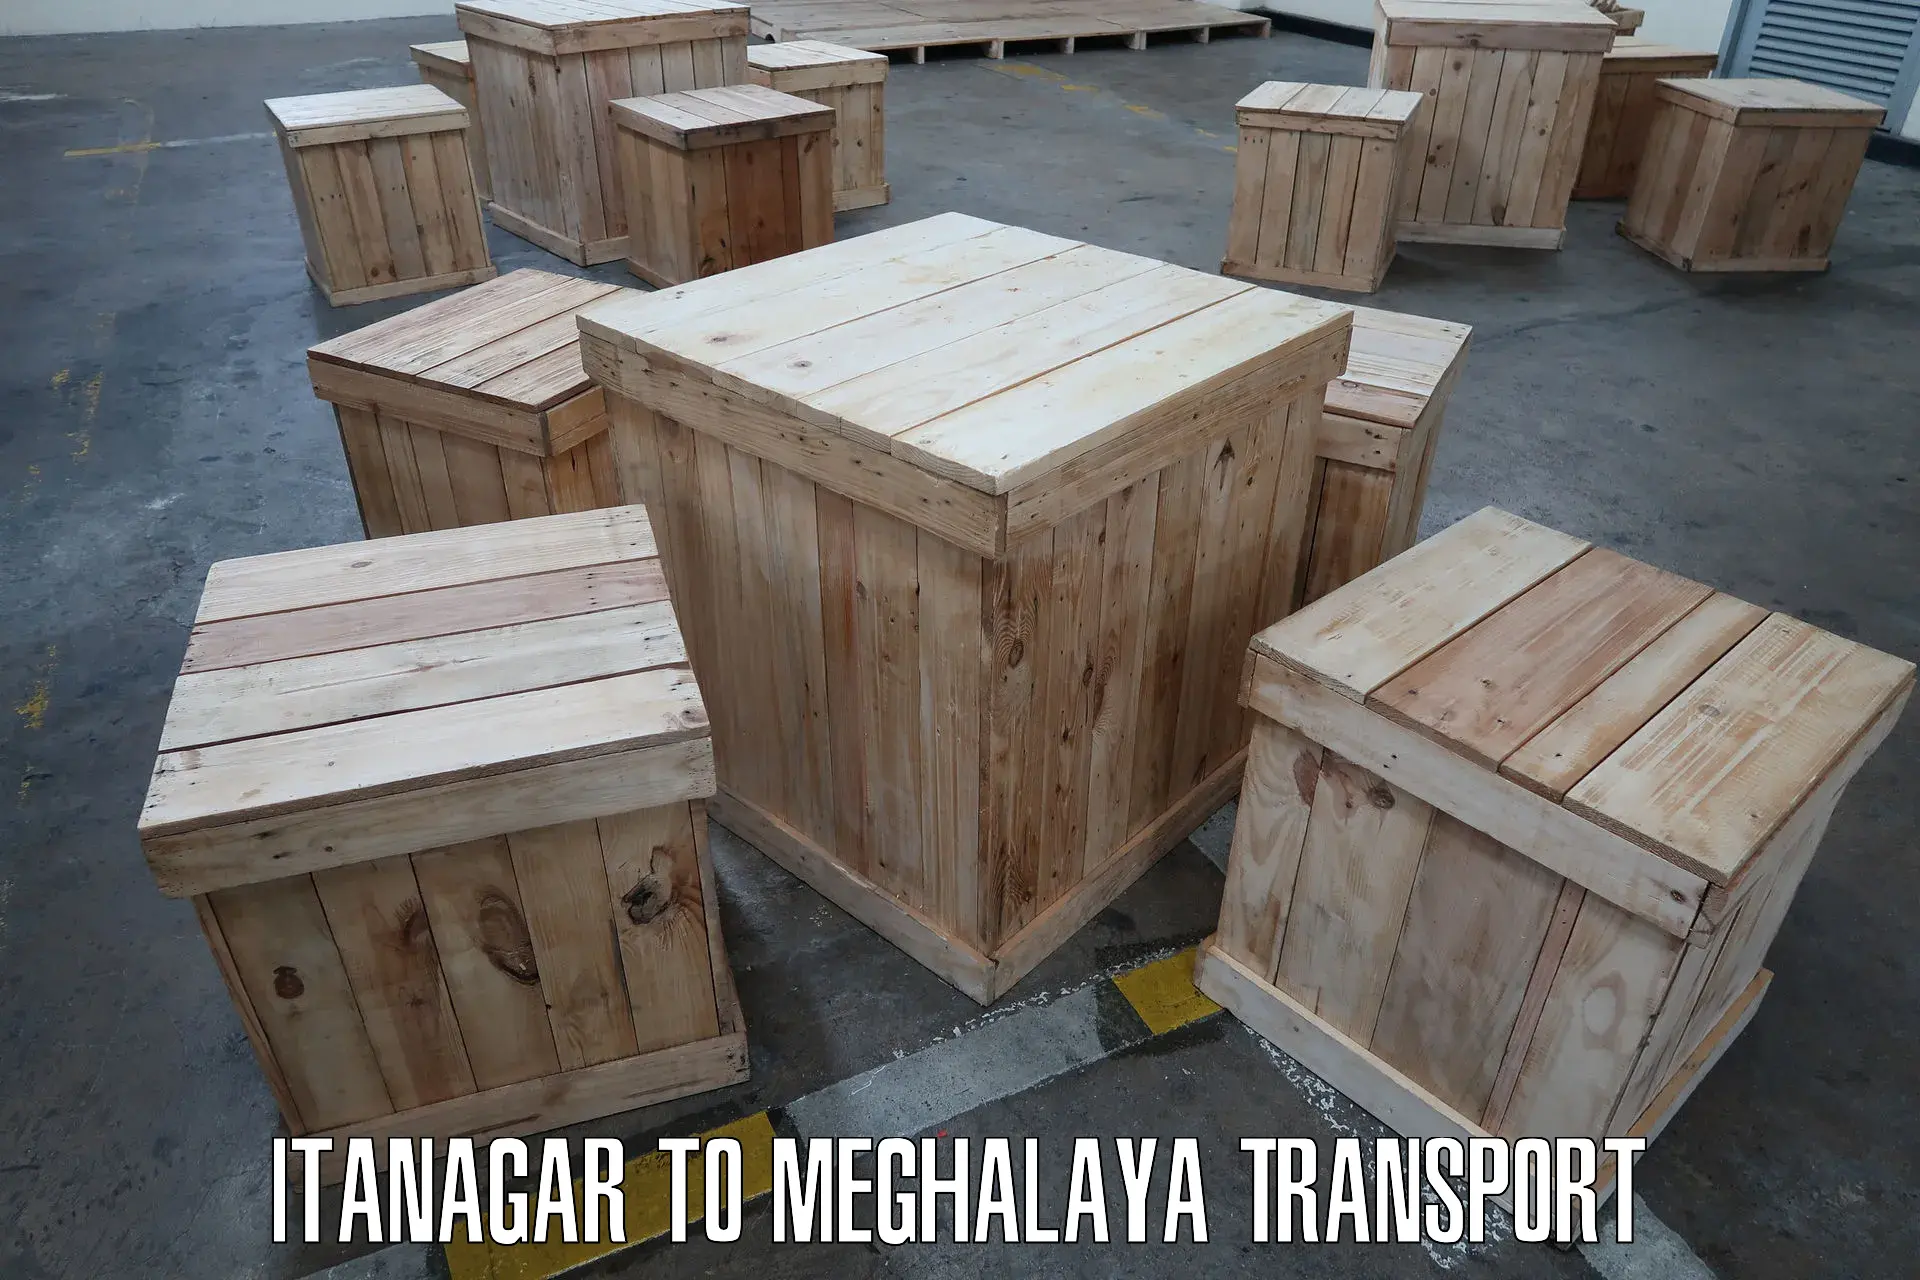 Transport in sharing in Itanagar to Meghalaya